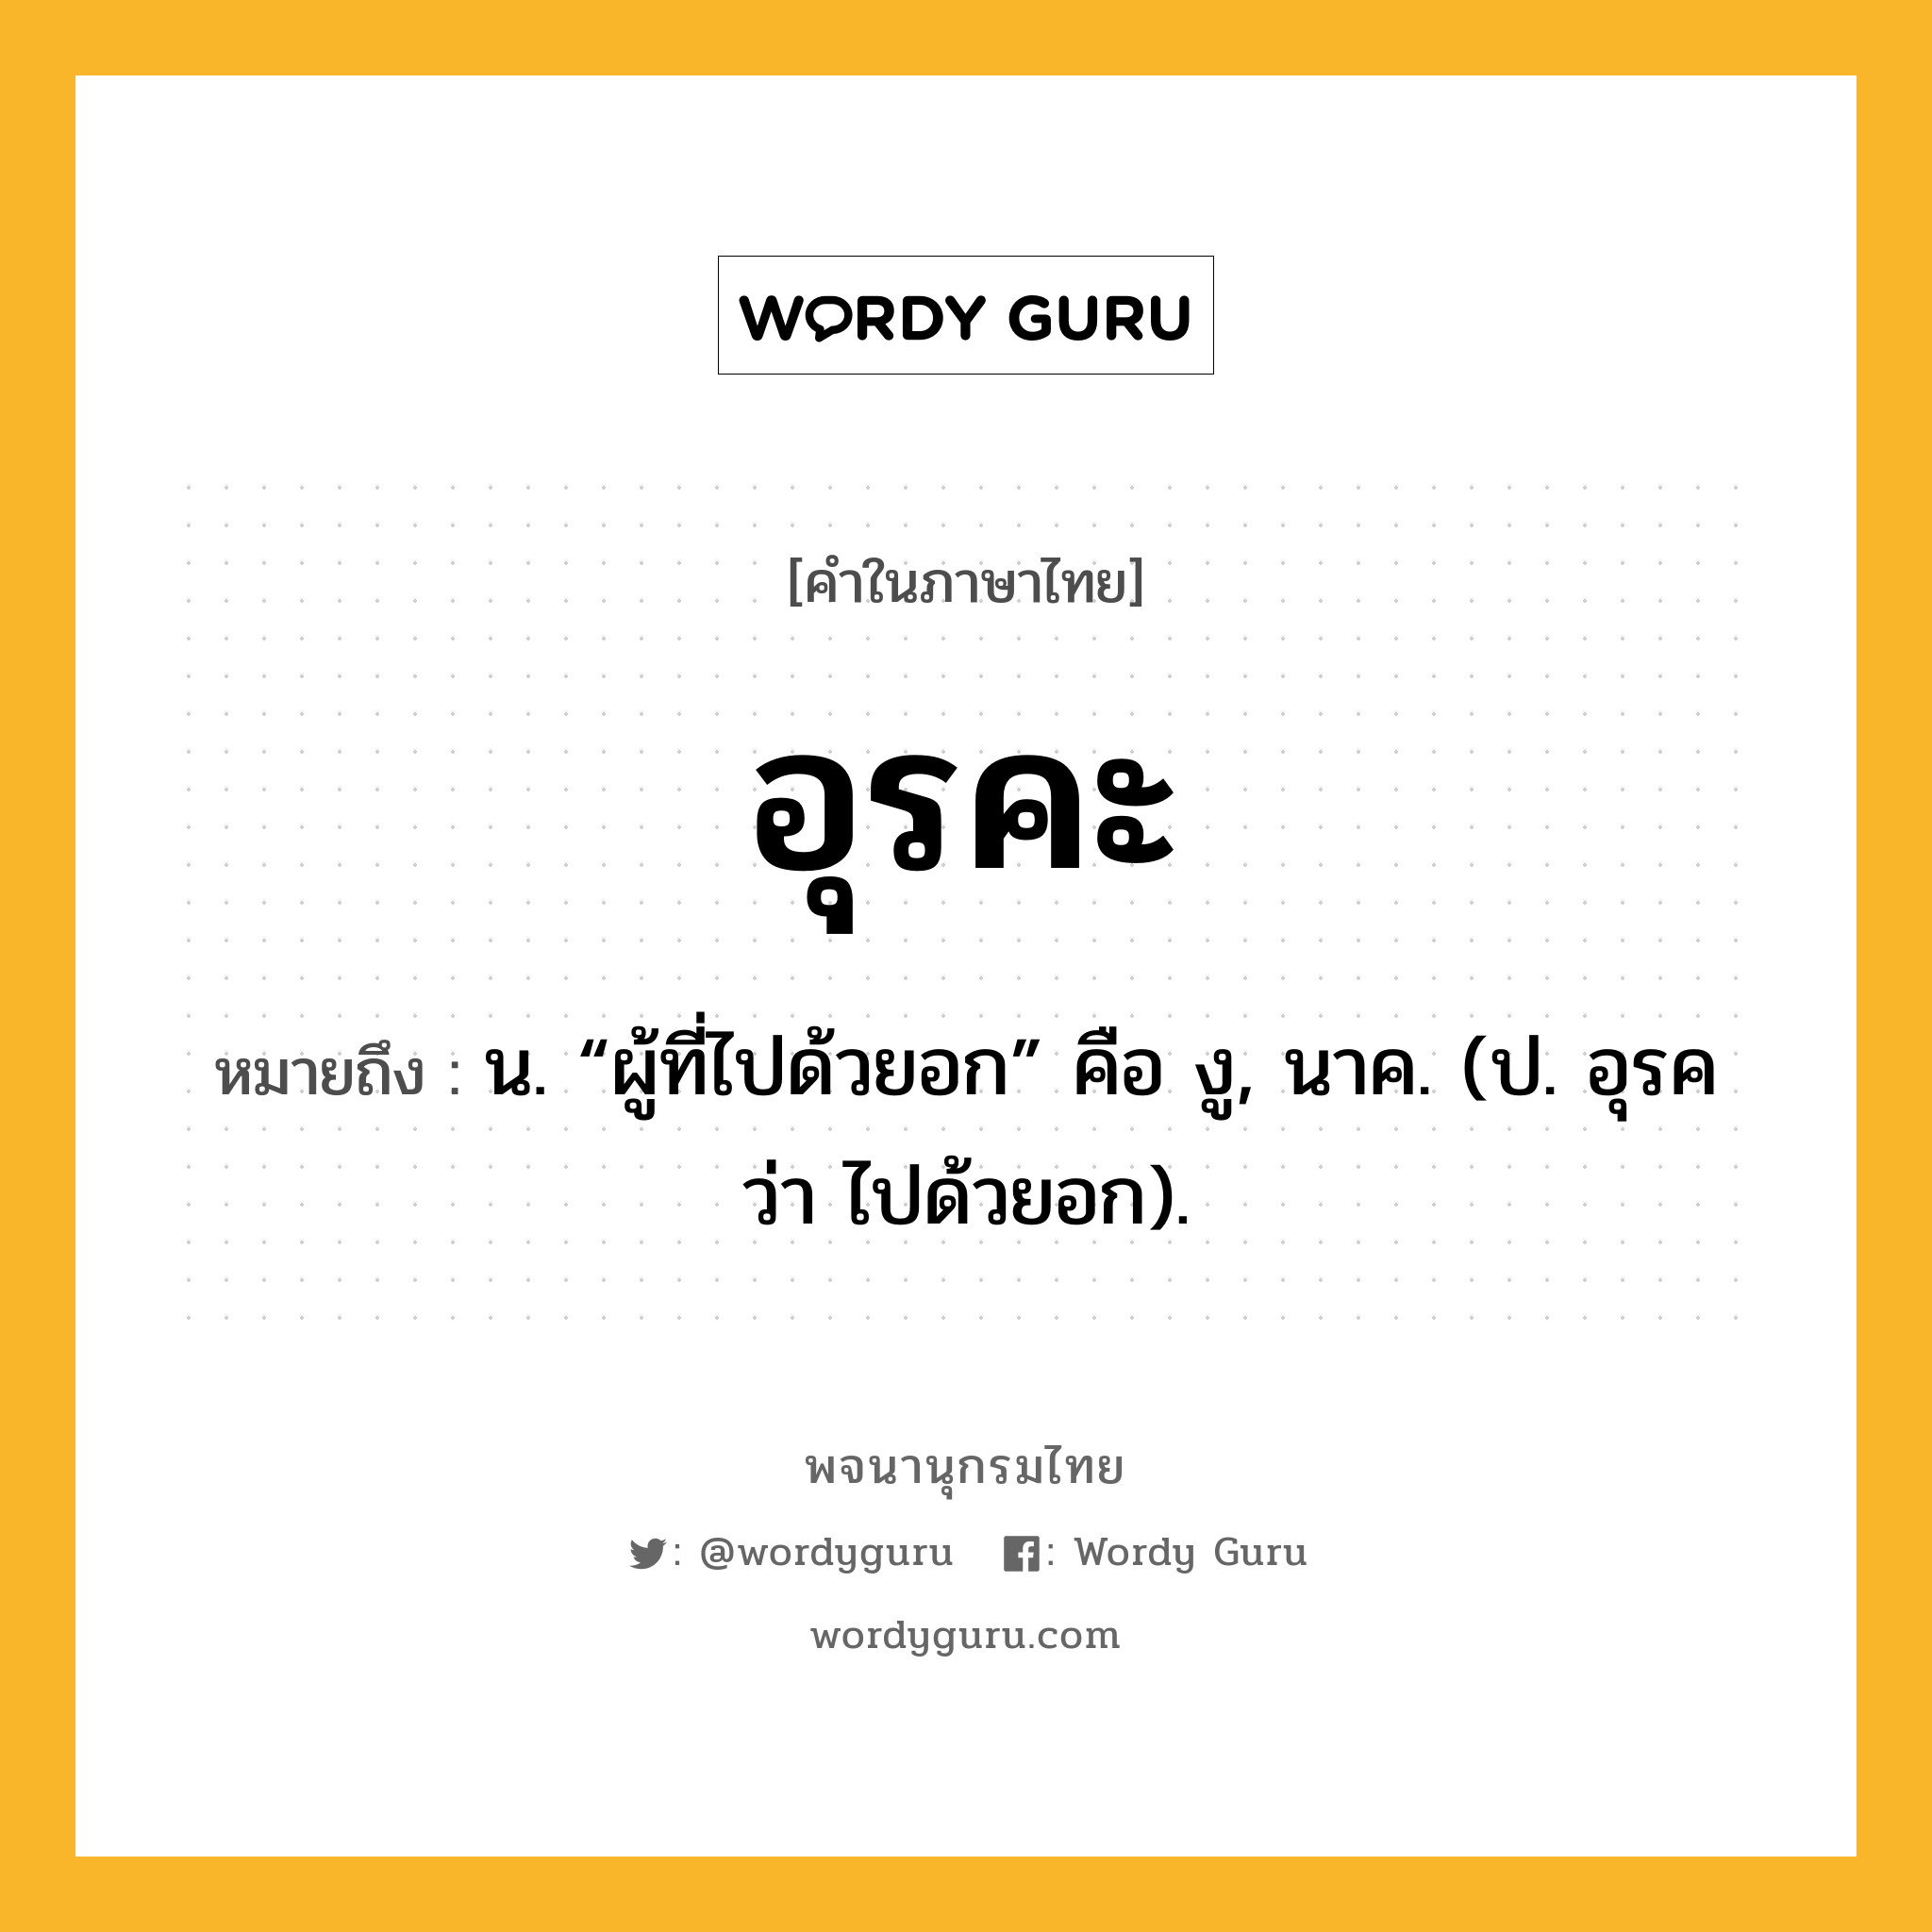 อุรคะ หมายถึงอะไร?, คำในภาษาไทย อุรคะ หมายถึง น. “ผู้ที่ไปด้วยอก” คือ งู, นาค. (ป. อุรค ว่า ไปด้วยอก).